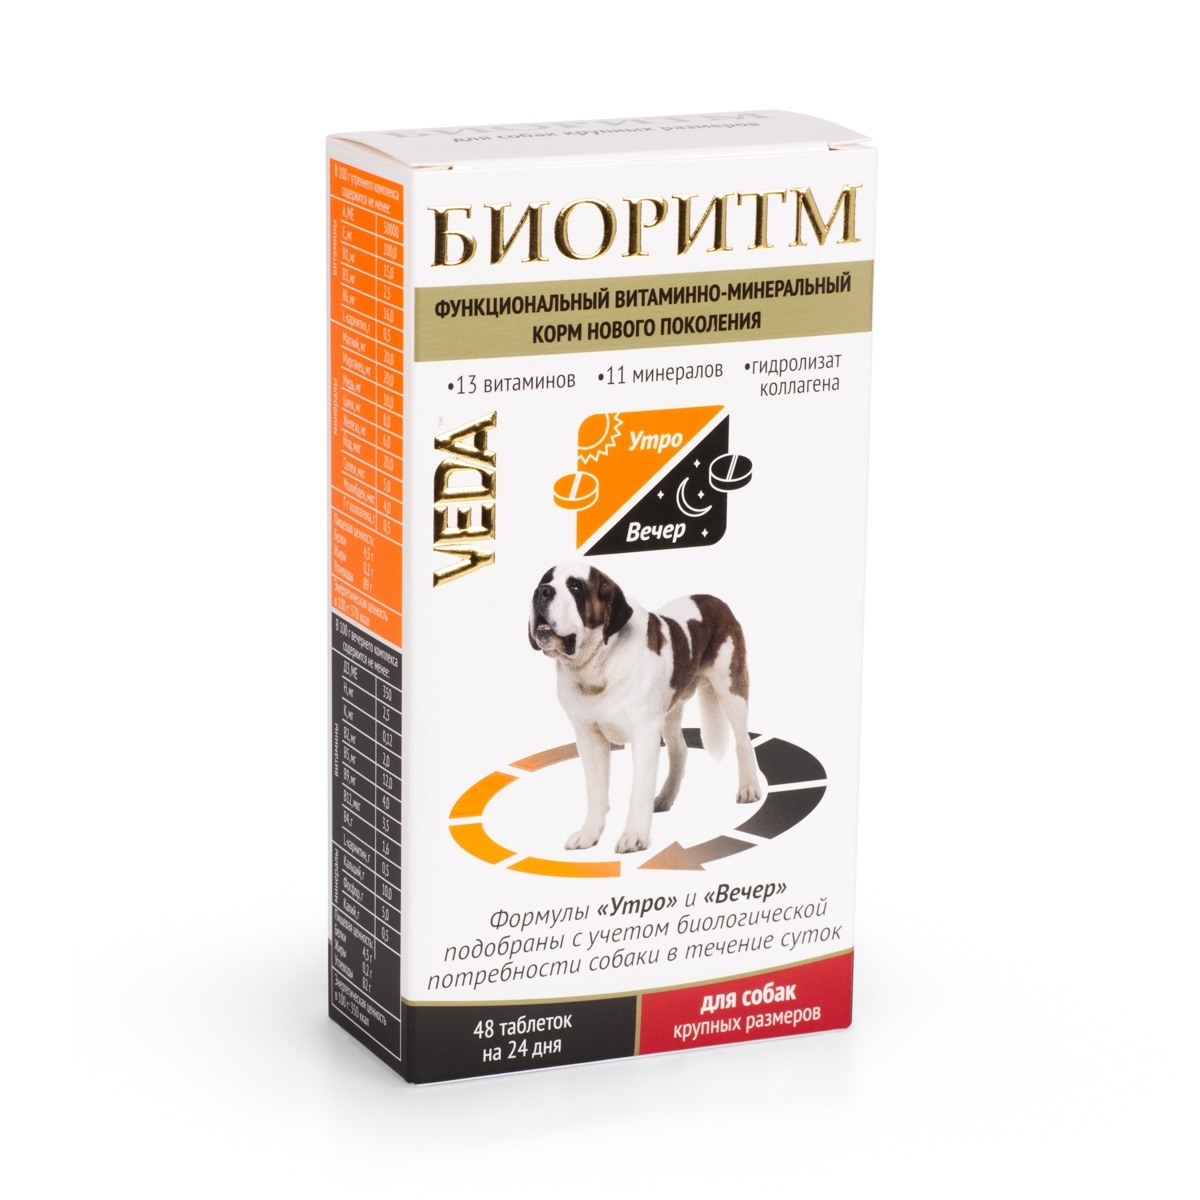 Веда Веда биоритм витамины для собак крупных пород (20 г) веда веда шампунь от колтунов для пушистых собак 220 г